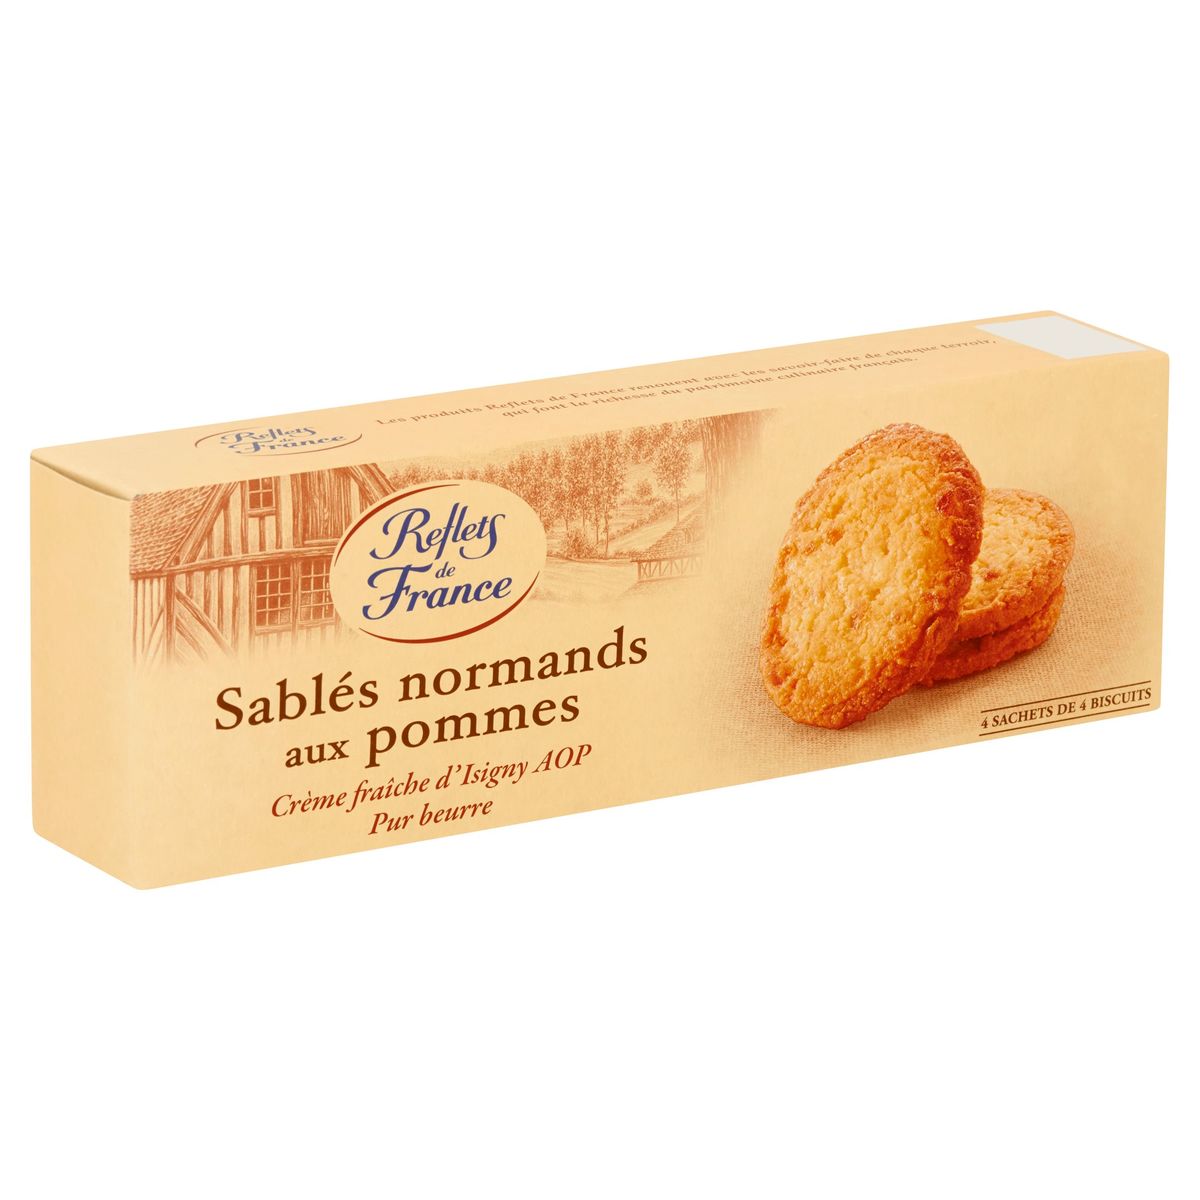 Reflets de France Biscuits au Beurre aux Pommes x 16 150 g